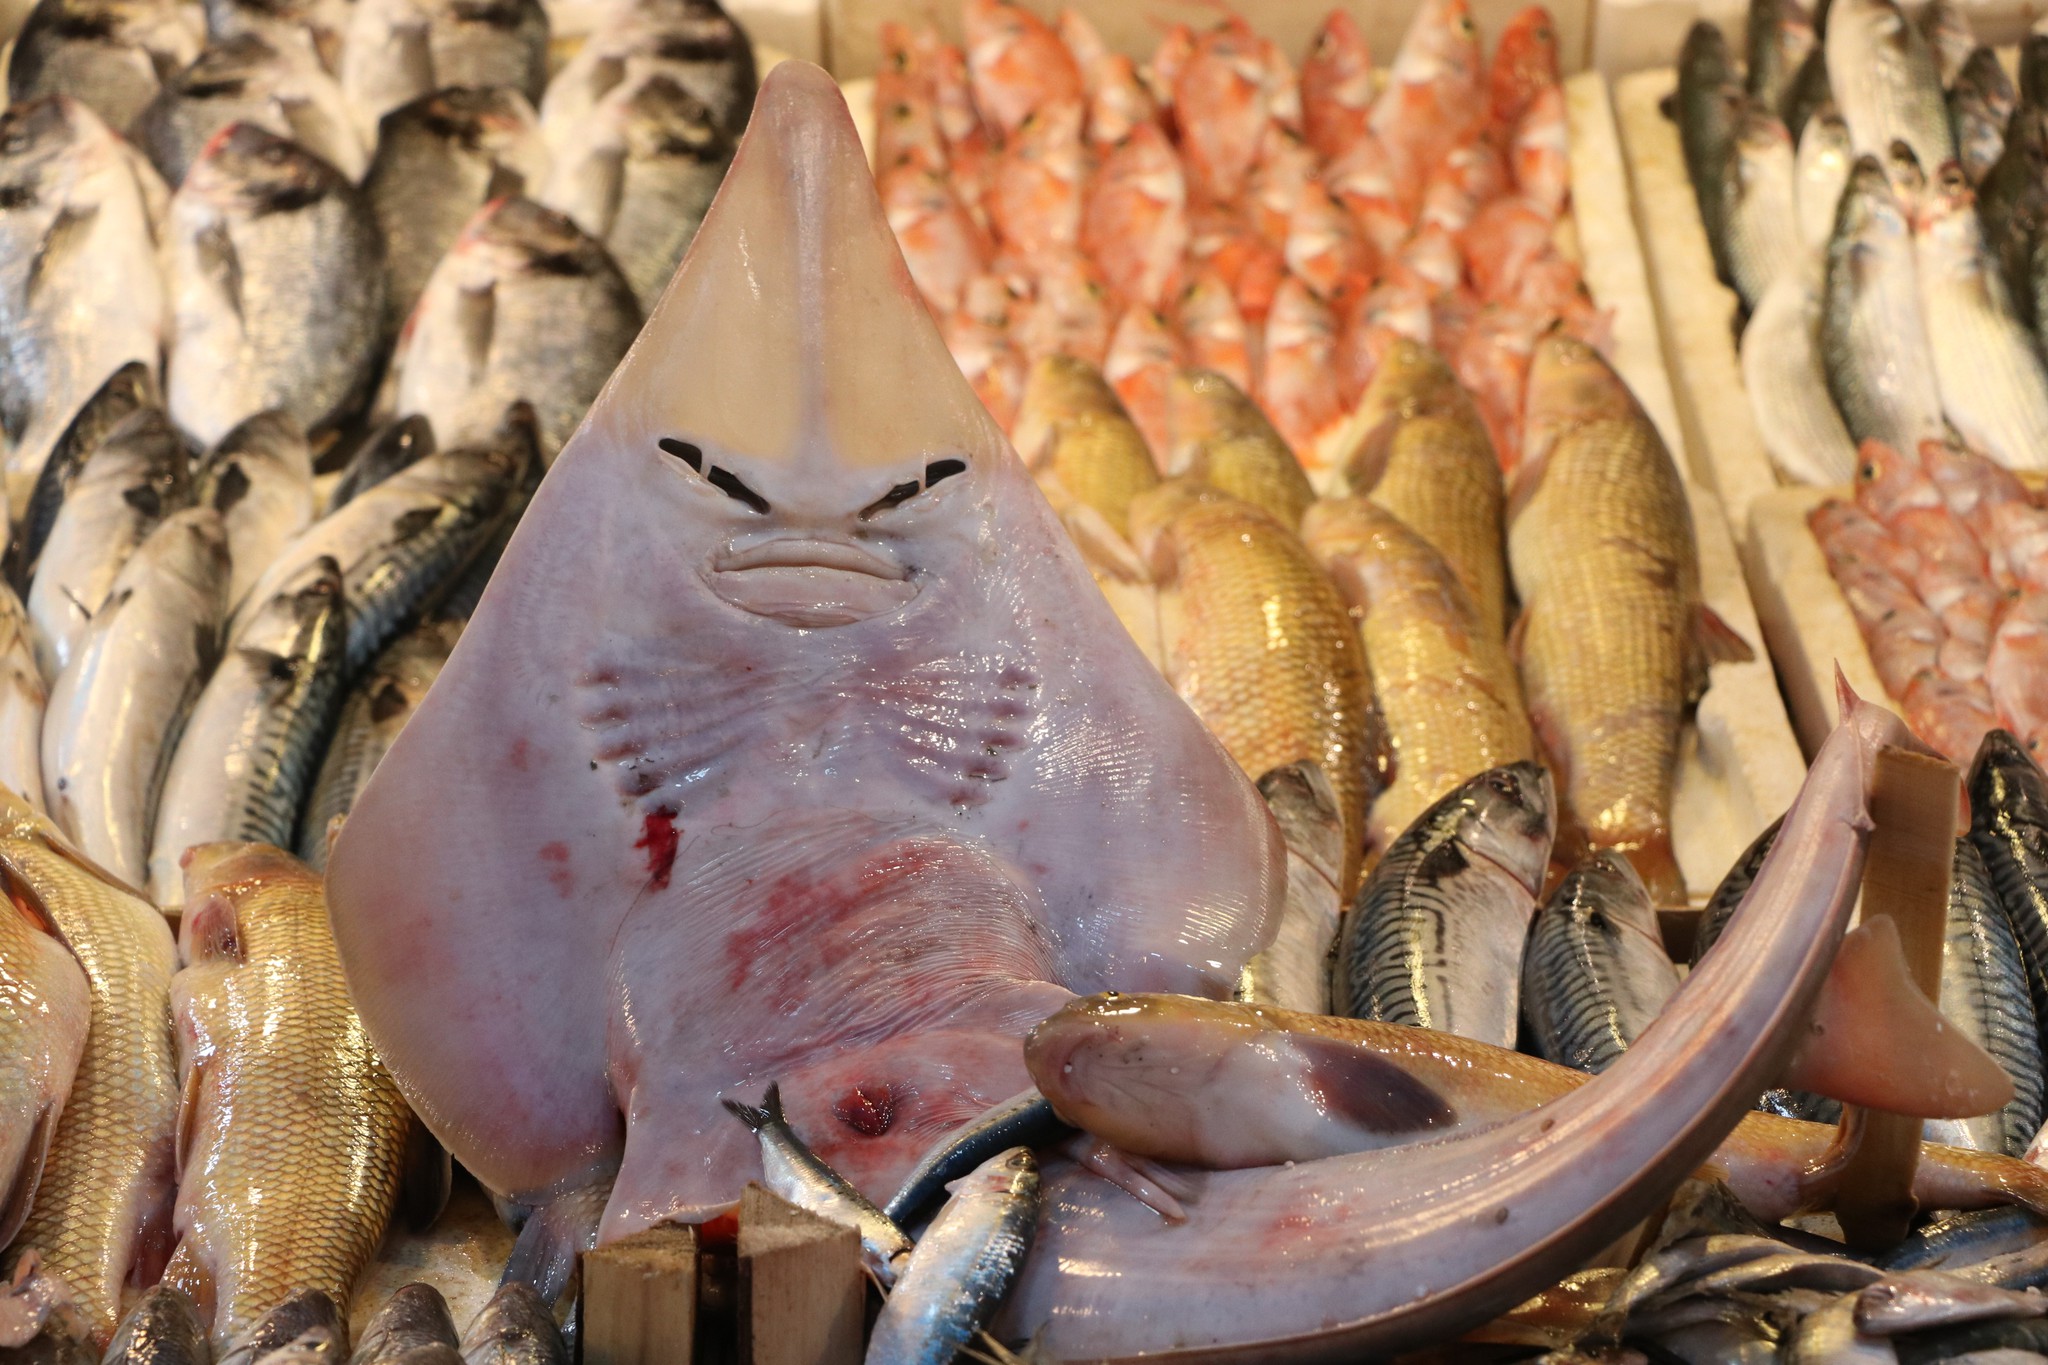 Mersin’de balıkçıların ağına takılan insan yüzlü balık, görenleri hayrete düşürüyor